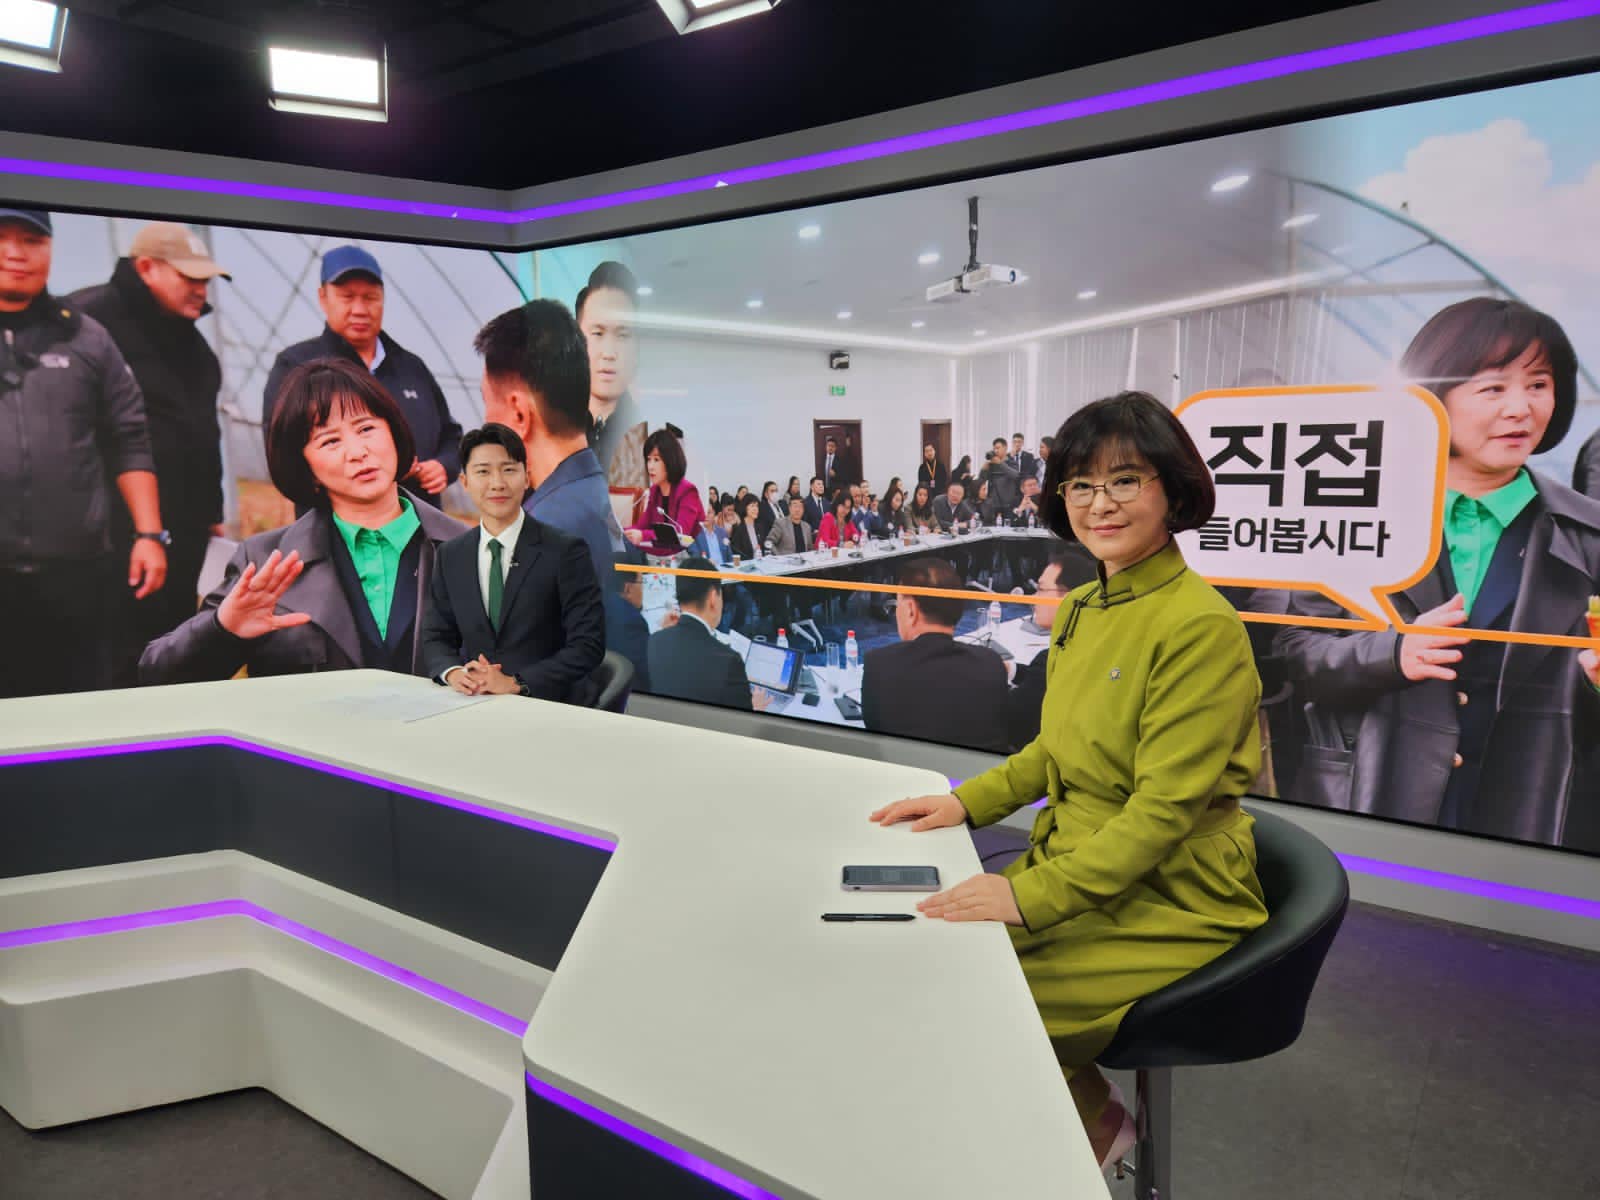 УИХ-ын гишүүн Д.Өнөрболор БНСУ-ын Кённам мужийн Согён Телевизийн нэвтрүүлэгт оролцлоо